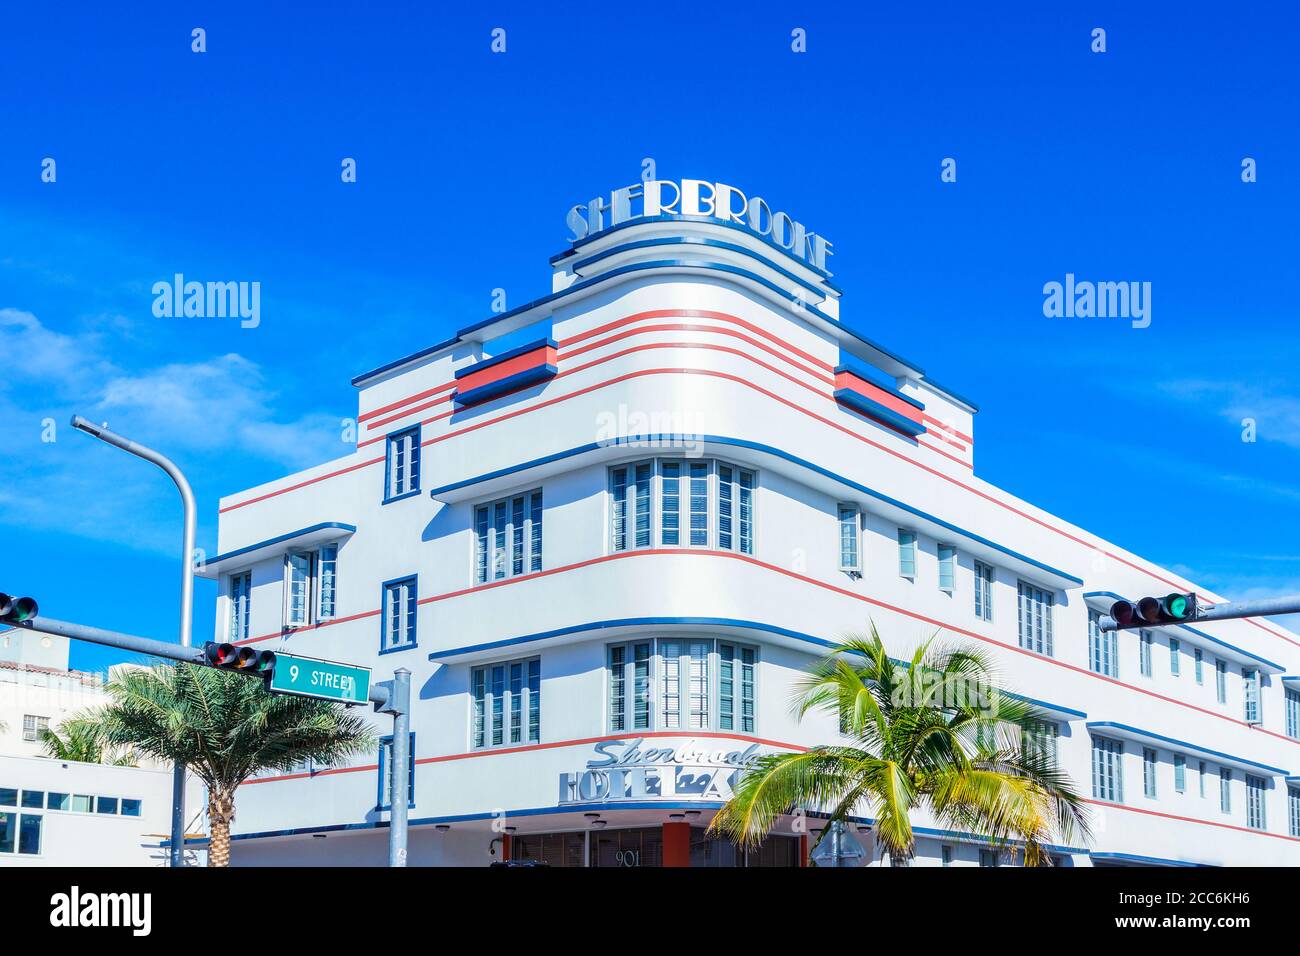 South Beach, Floride - 29 décembre 2014 : Hôtel art déco de Sherbrooke avec ses magnifiques Blue Skies. Banque D'Images